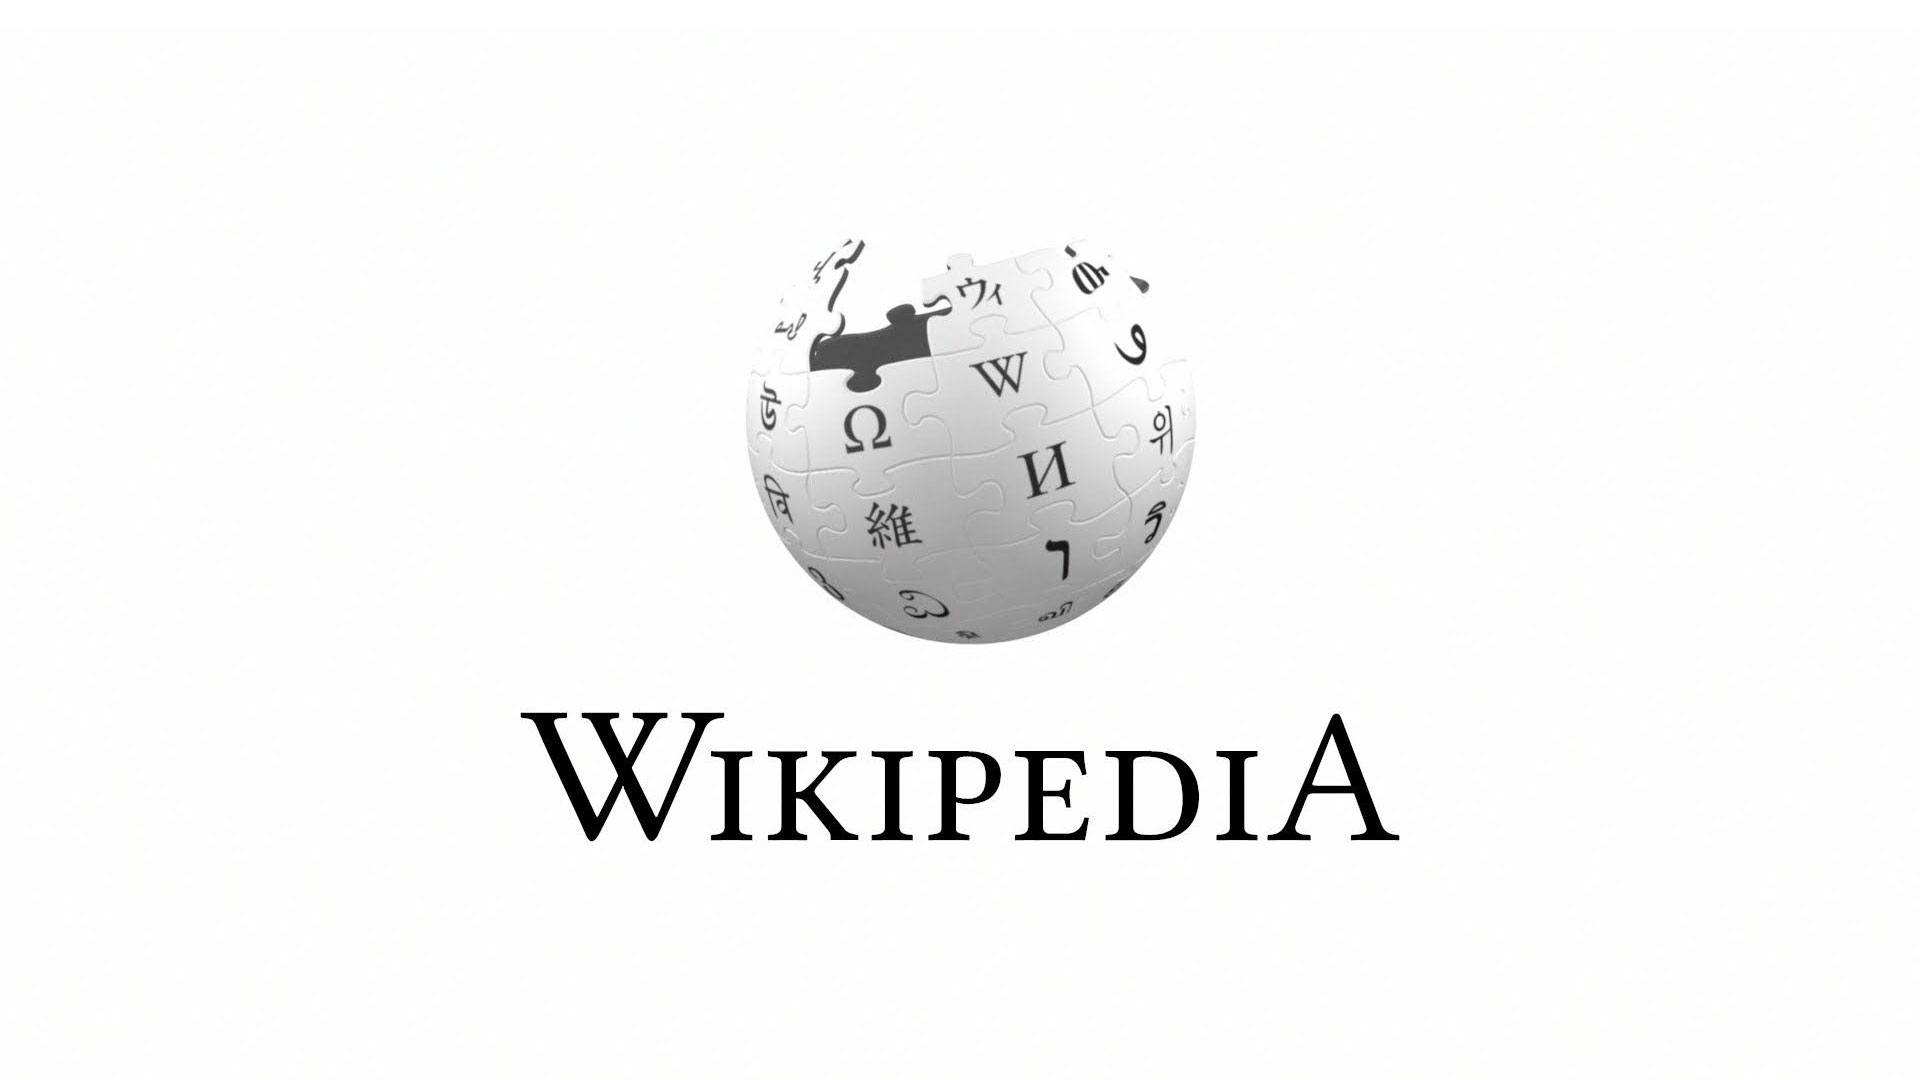 Letto - Wikipedia